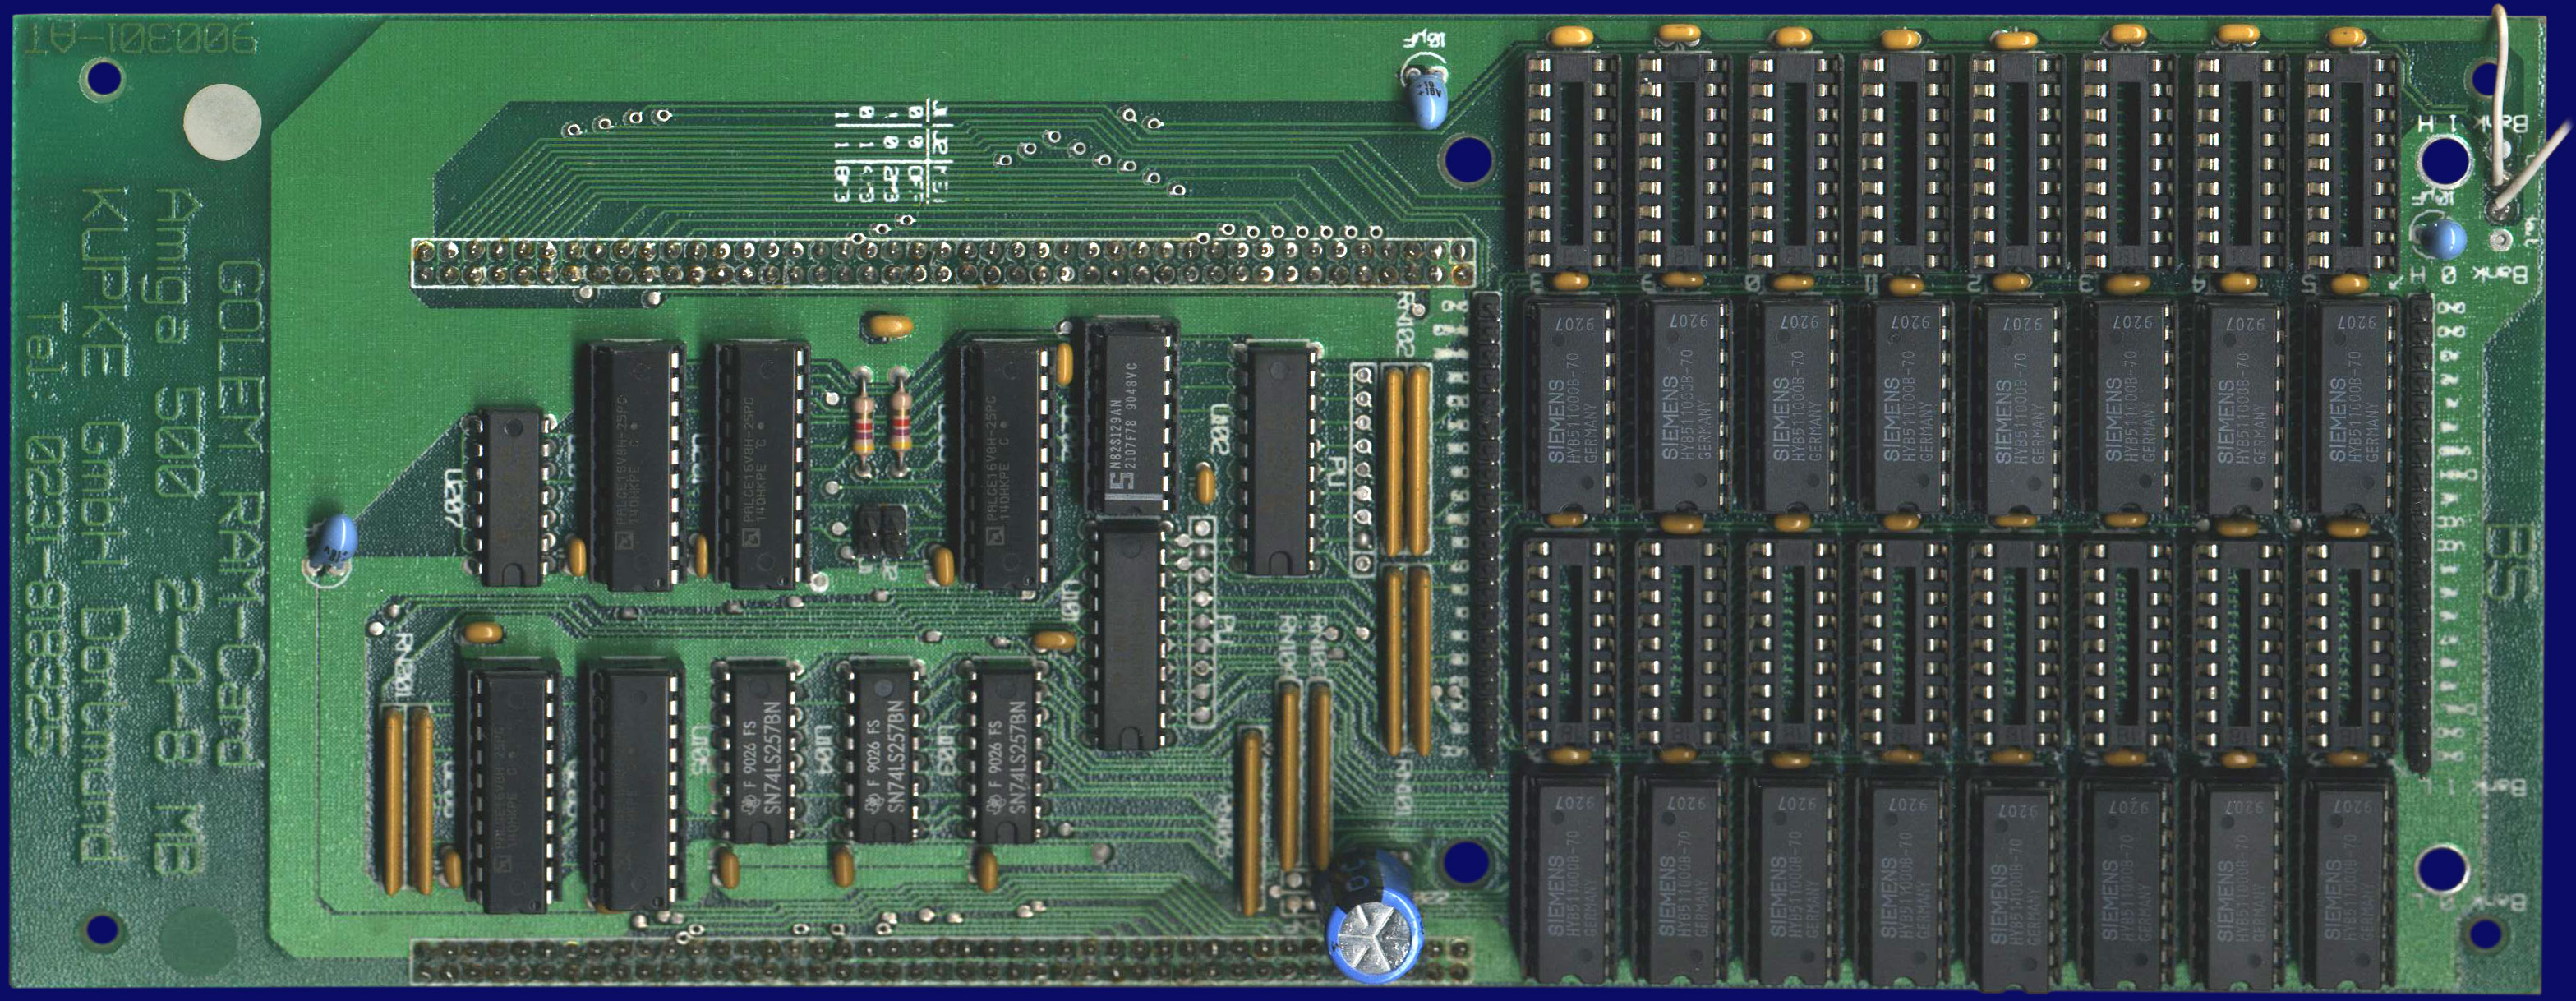 Kupke Golem RAM-Card (A500) - Main board, front side